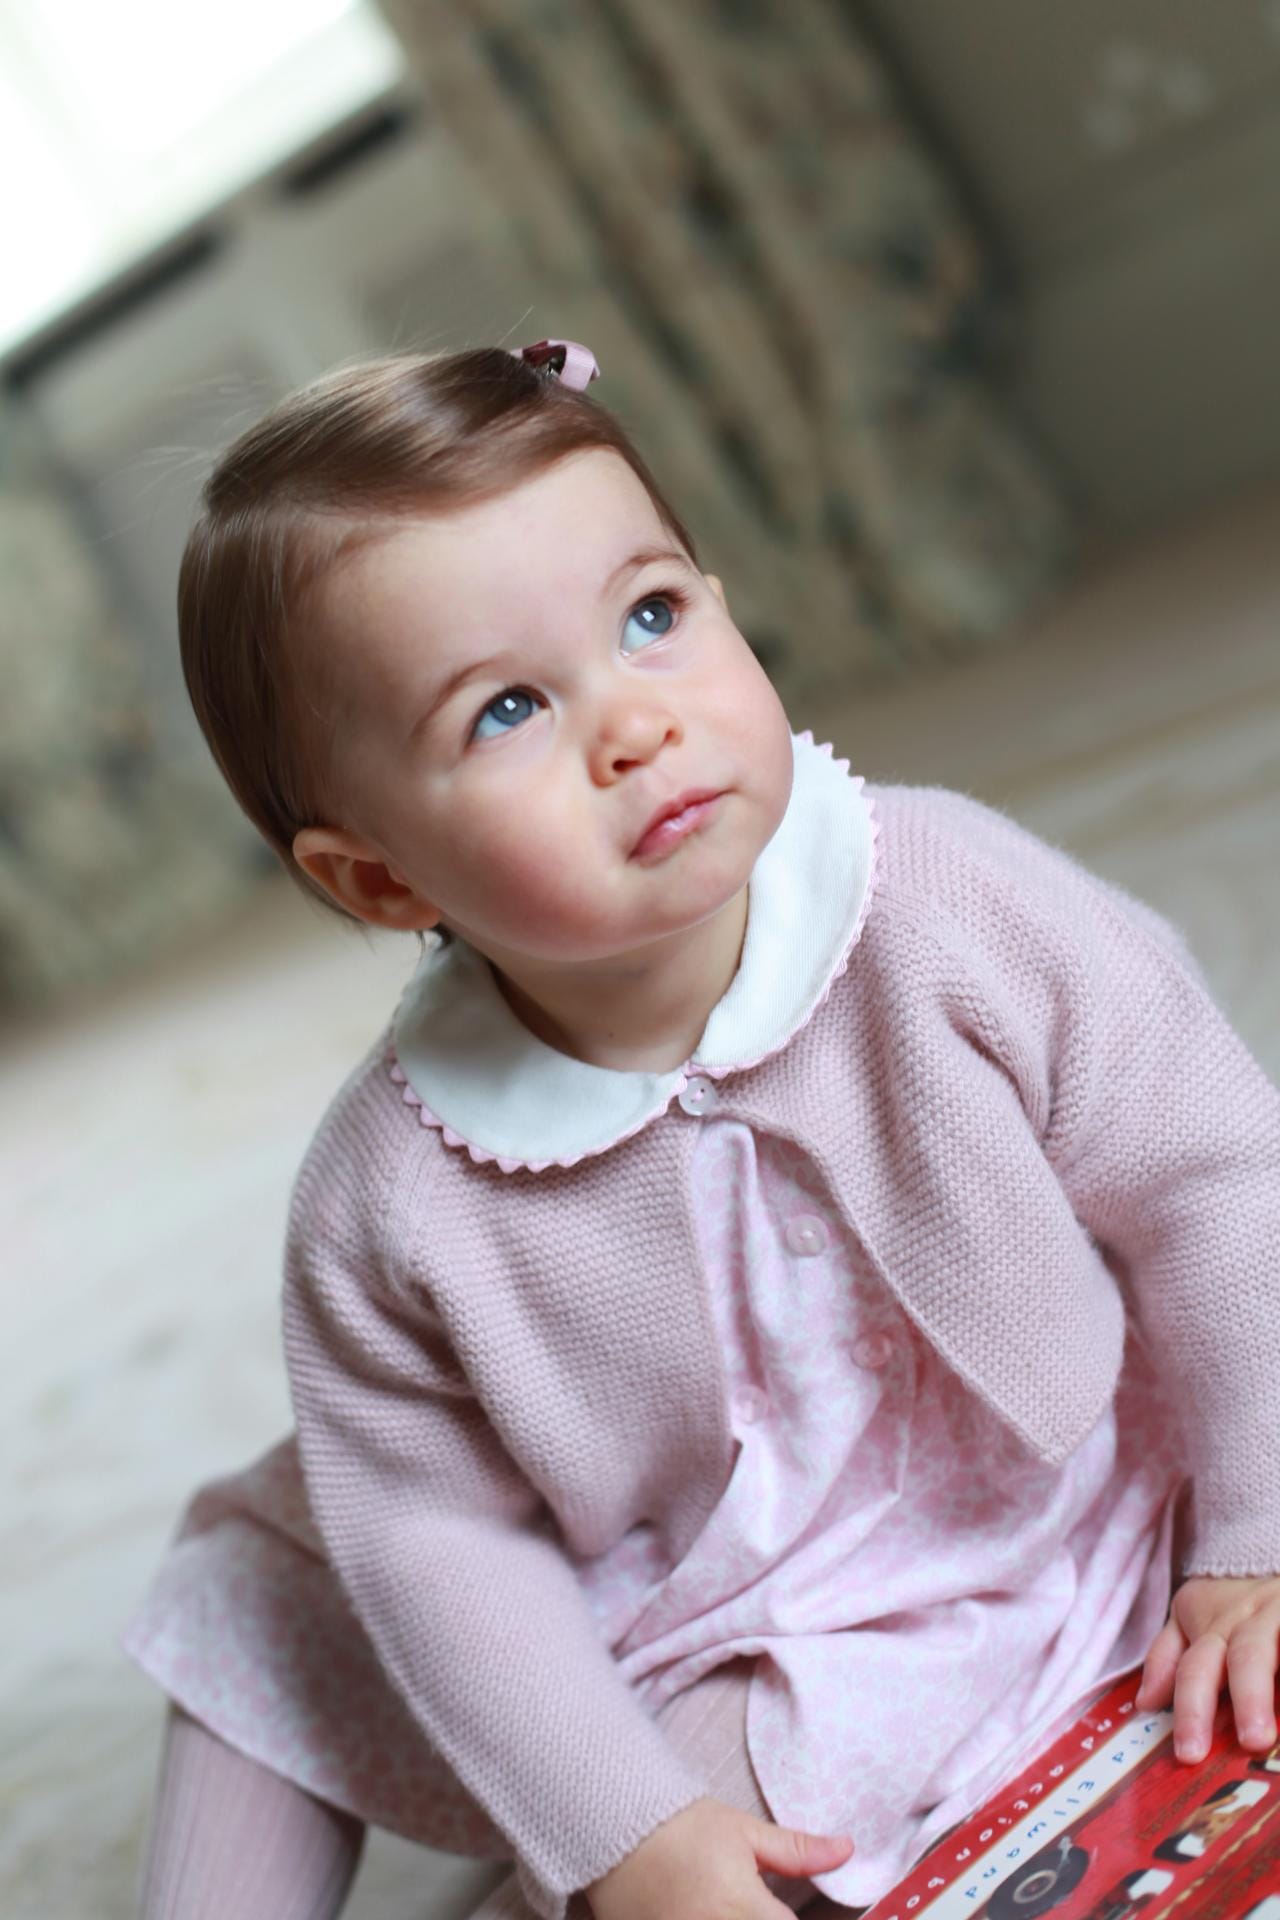 Prinzessin Charlotte (* 2015) ist die kleine Schwester von Prinz George und steht hinter ihm auf Platz vier der Thronfolge.